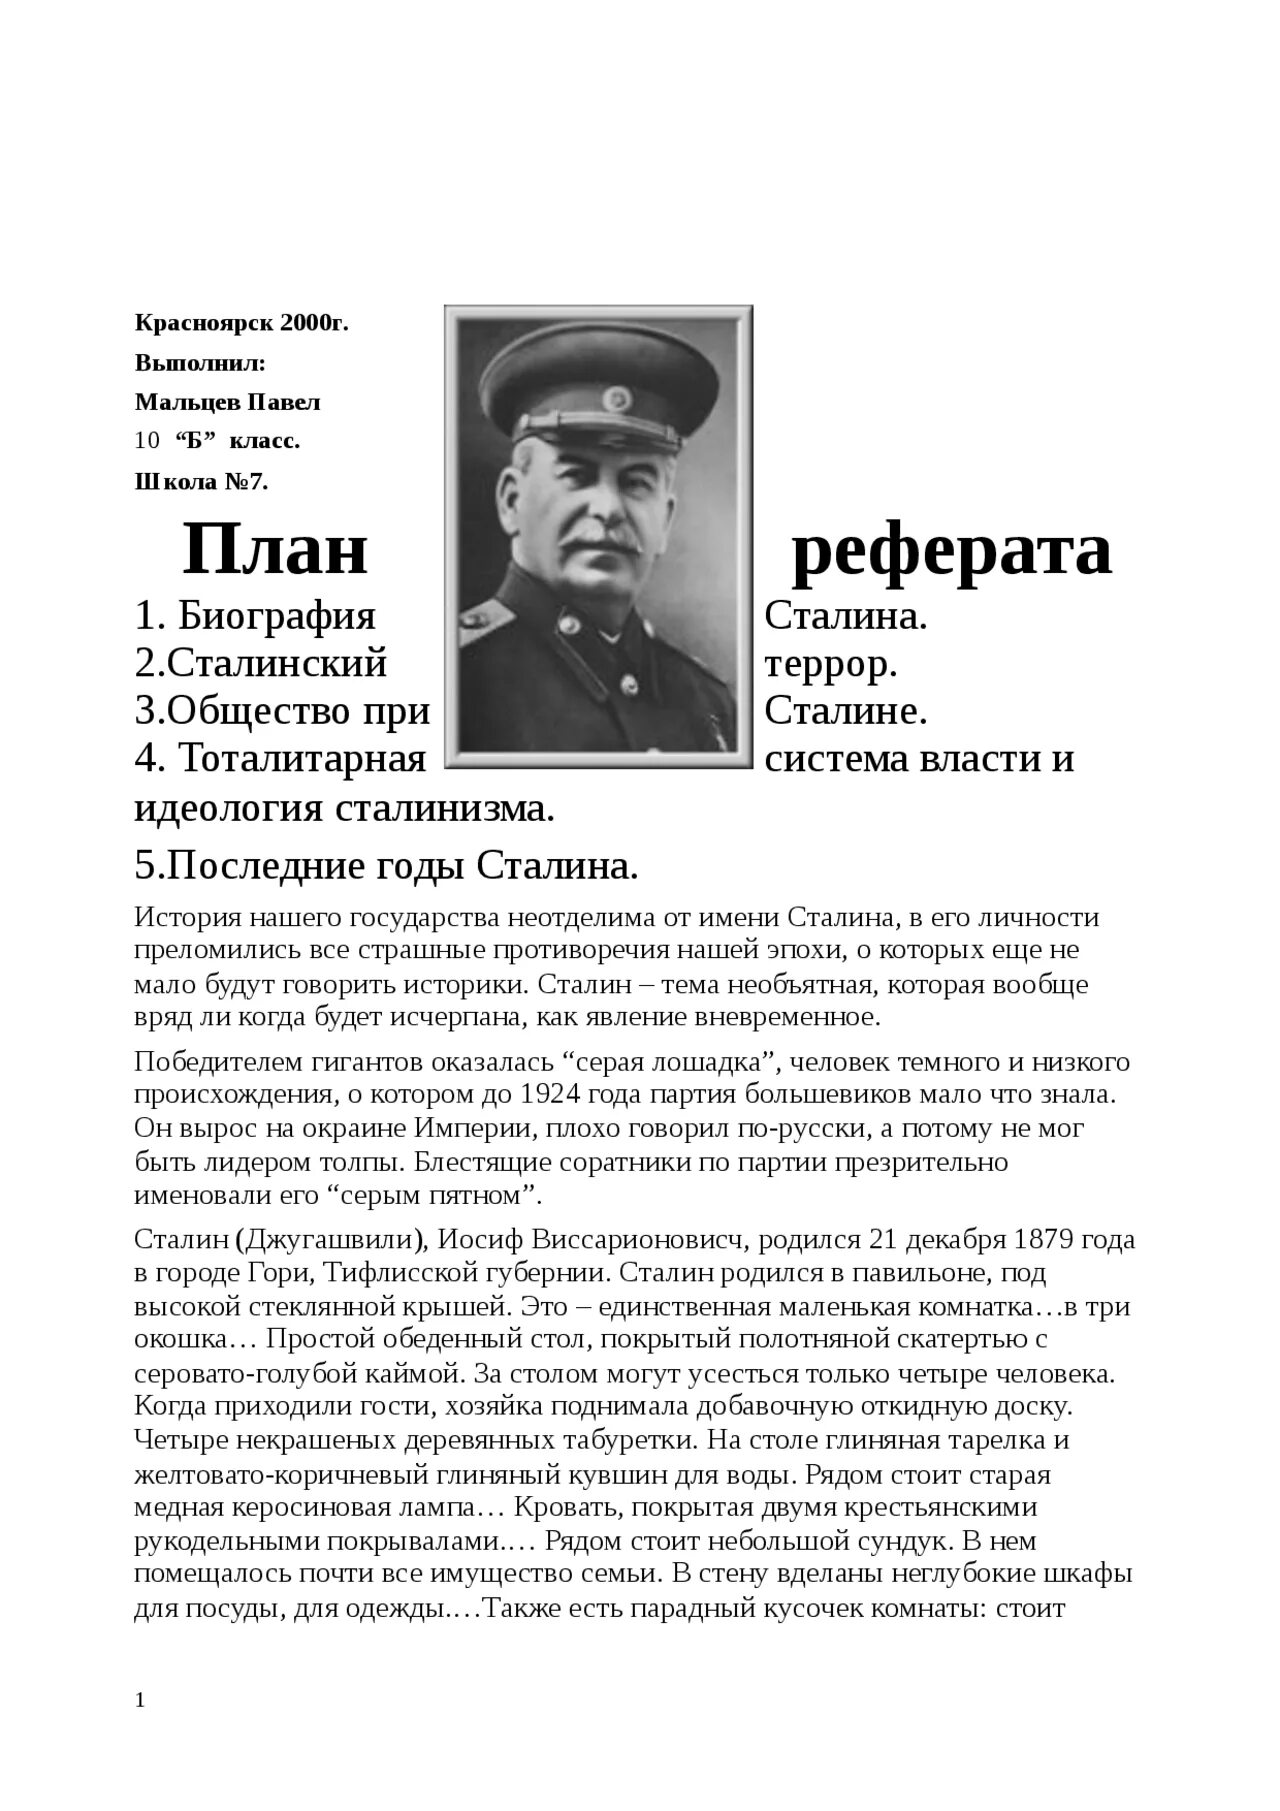 Доклад сталина 6 ноября выпустили на чем. Сталин реферат по истории. Правление Сталина реферат. Исторический портрет Сталина реферат. Эссе Сталина в Российской истории.